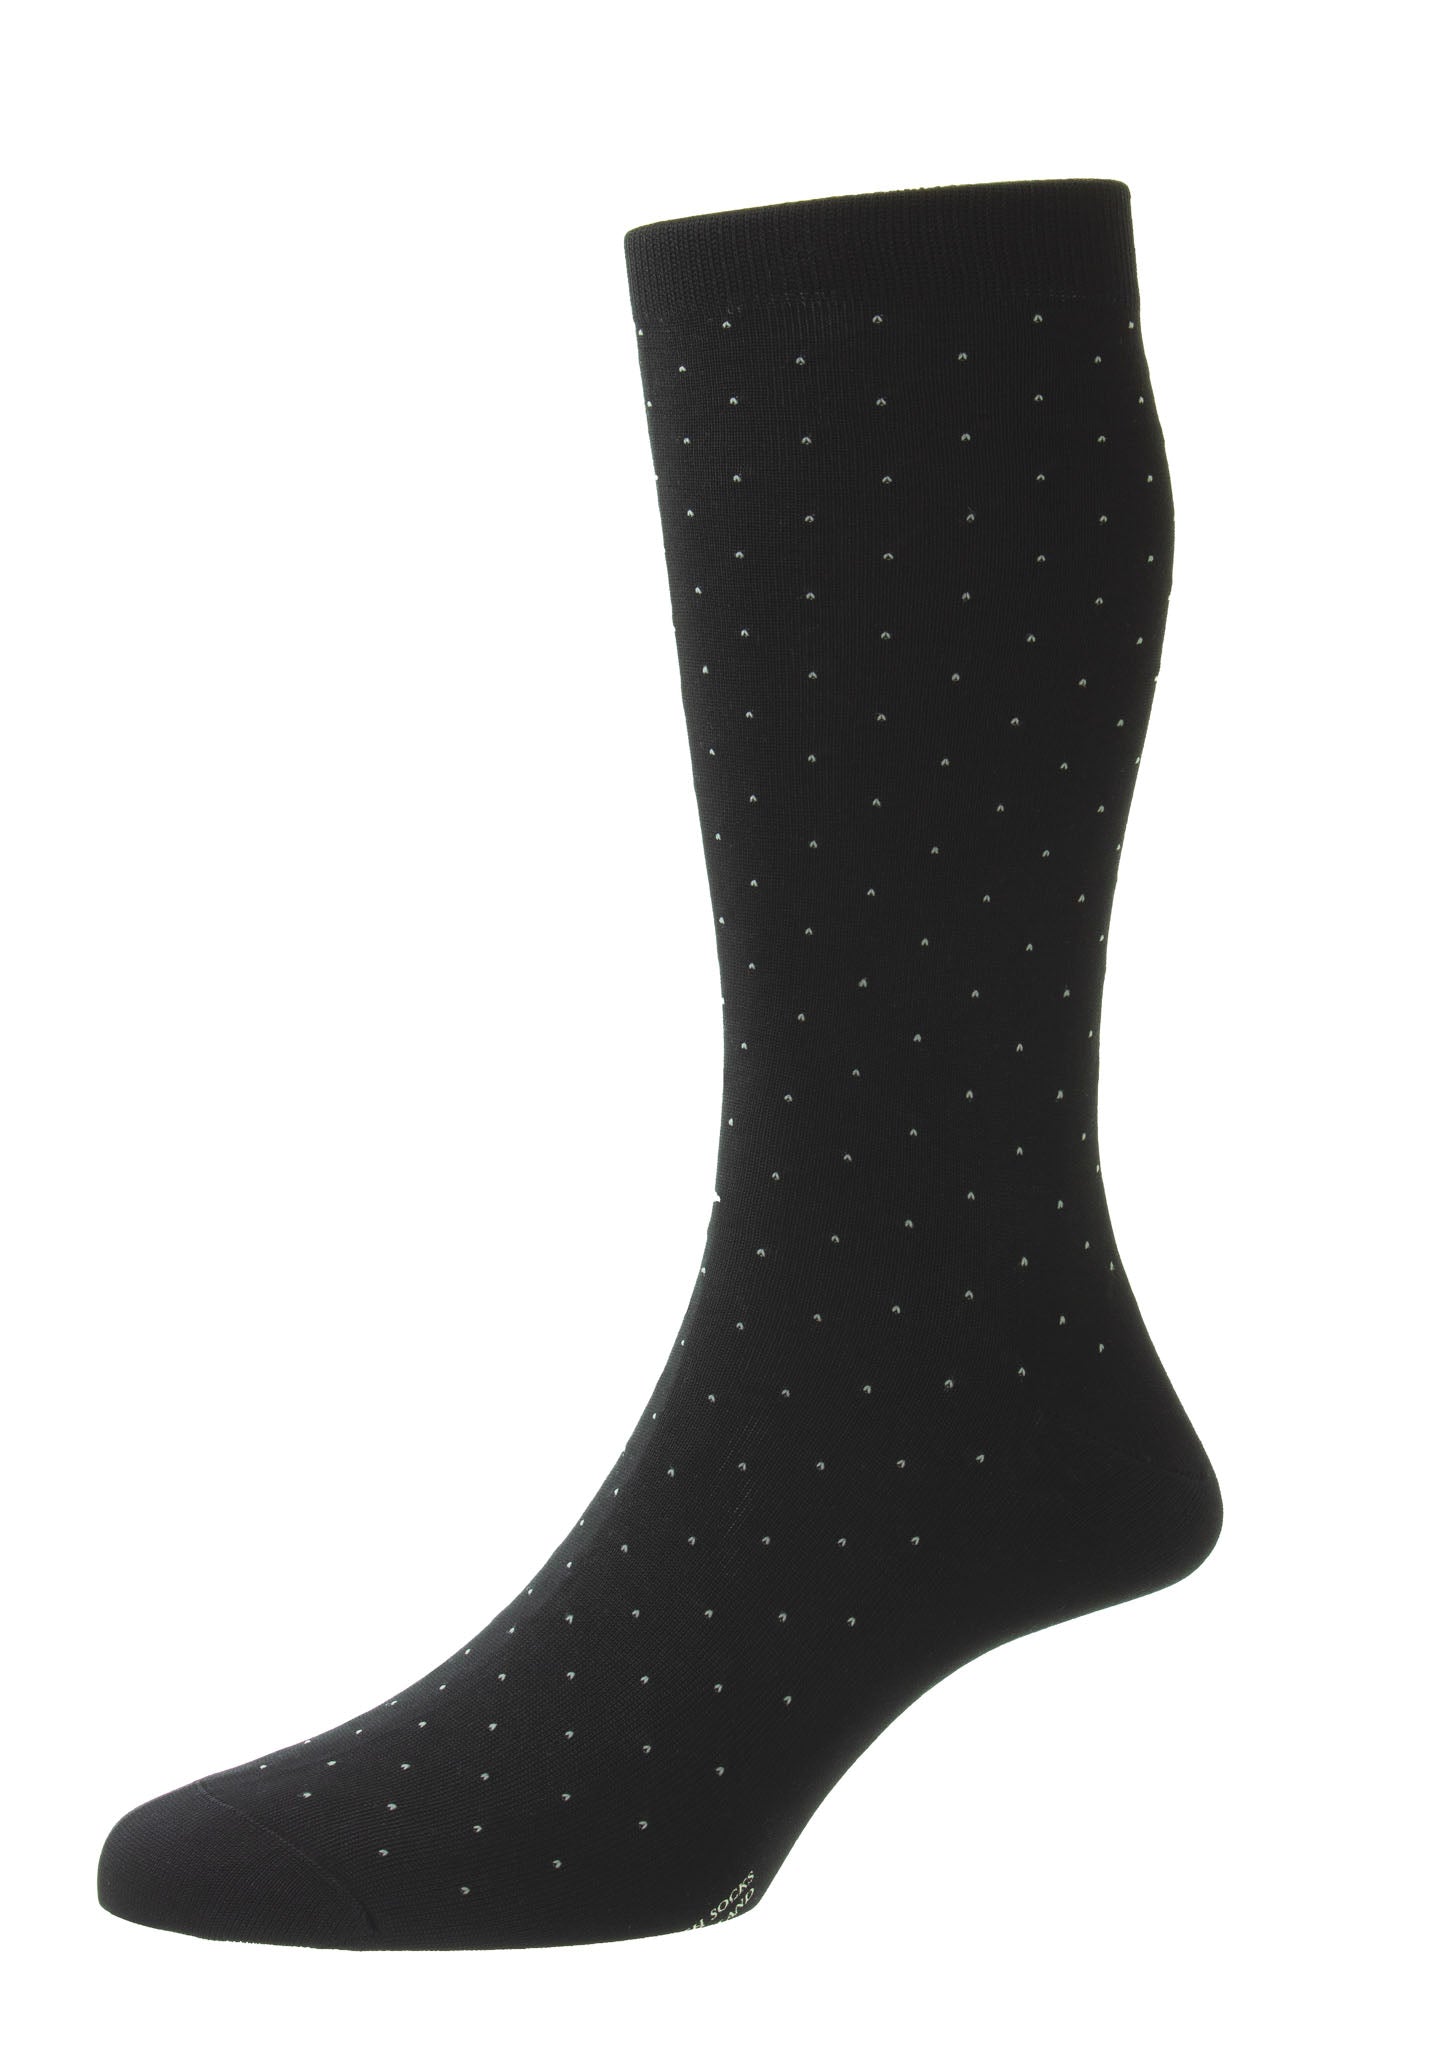 Gadsbury Motif Pin Dot Cotton Men's Socks